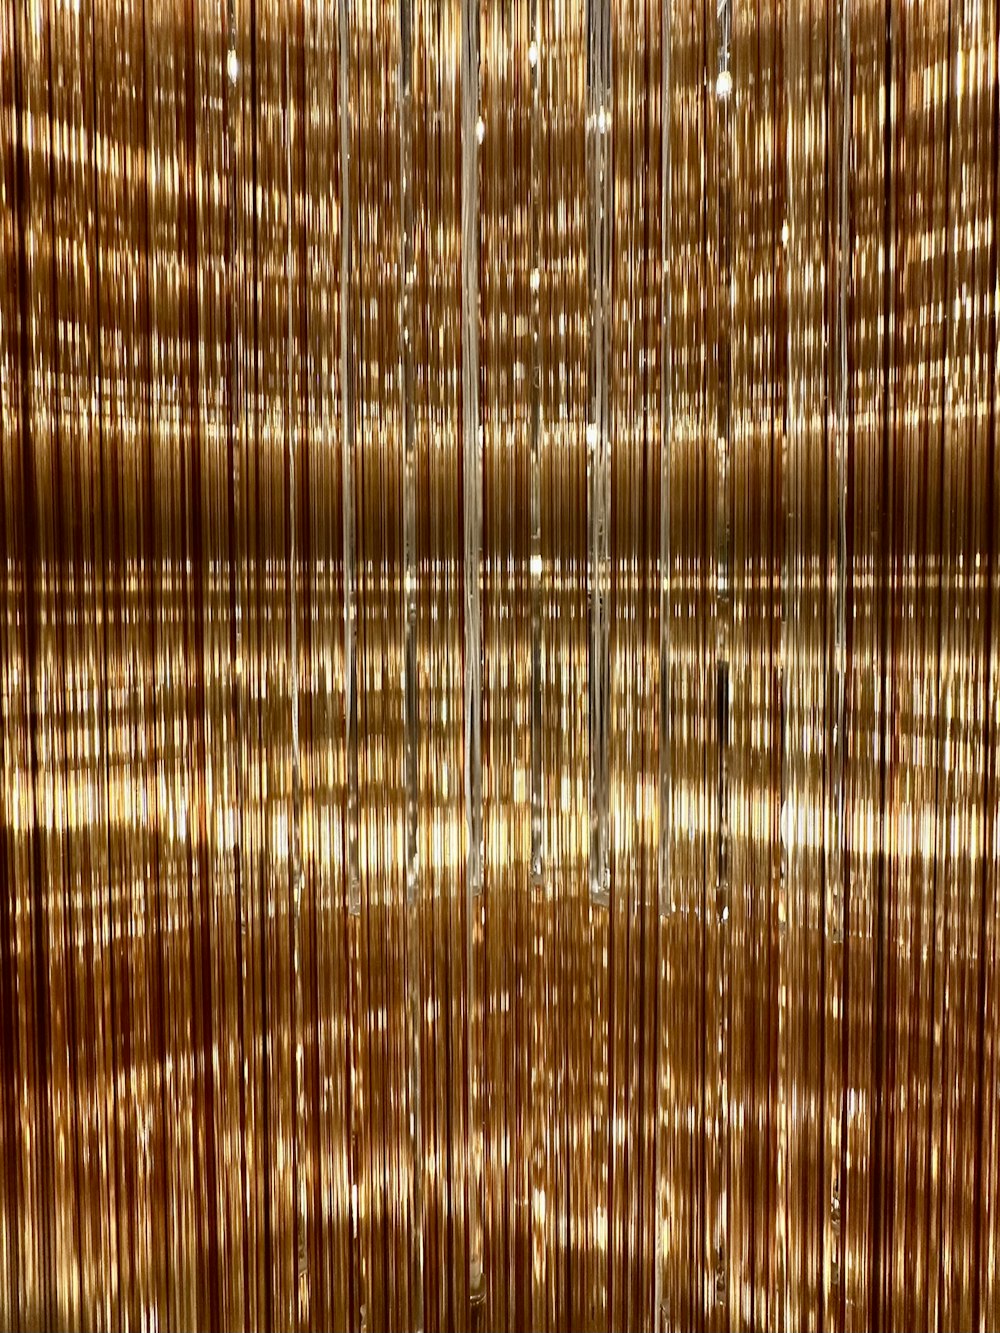 Ein Raum mit vielen goldfarbenen Vorhängen